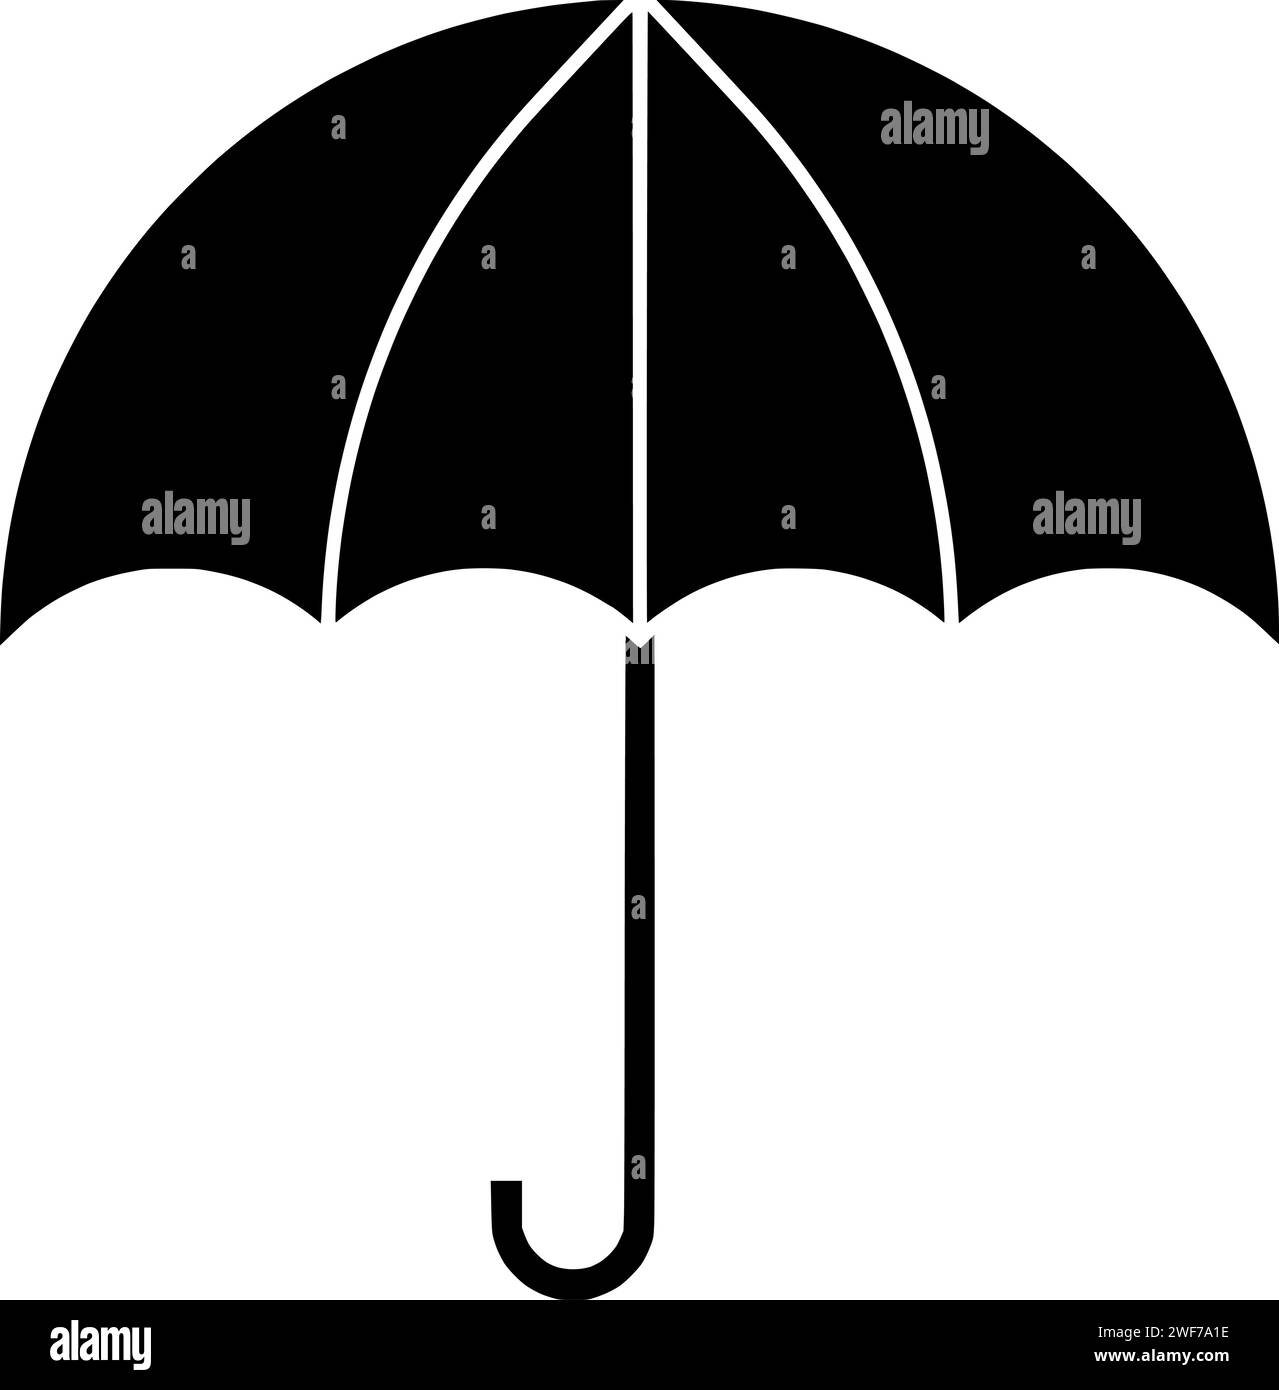 illustrazione dell'ombrello silhouette di protezione parasole logo icona stagione profilo meteo manico aperto per proteggere l'acqua accessorio pioggia autunnale forma meteorologica tendina parasole a secco assicurazione Illustrazione Vettoriale